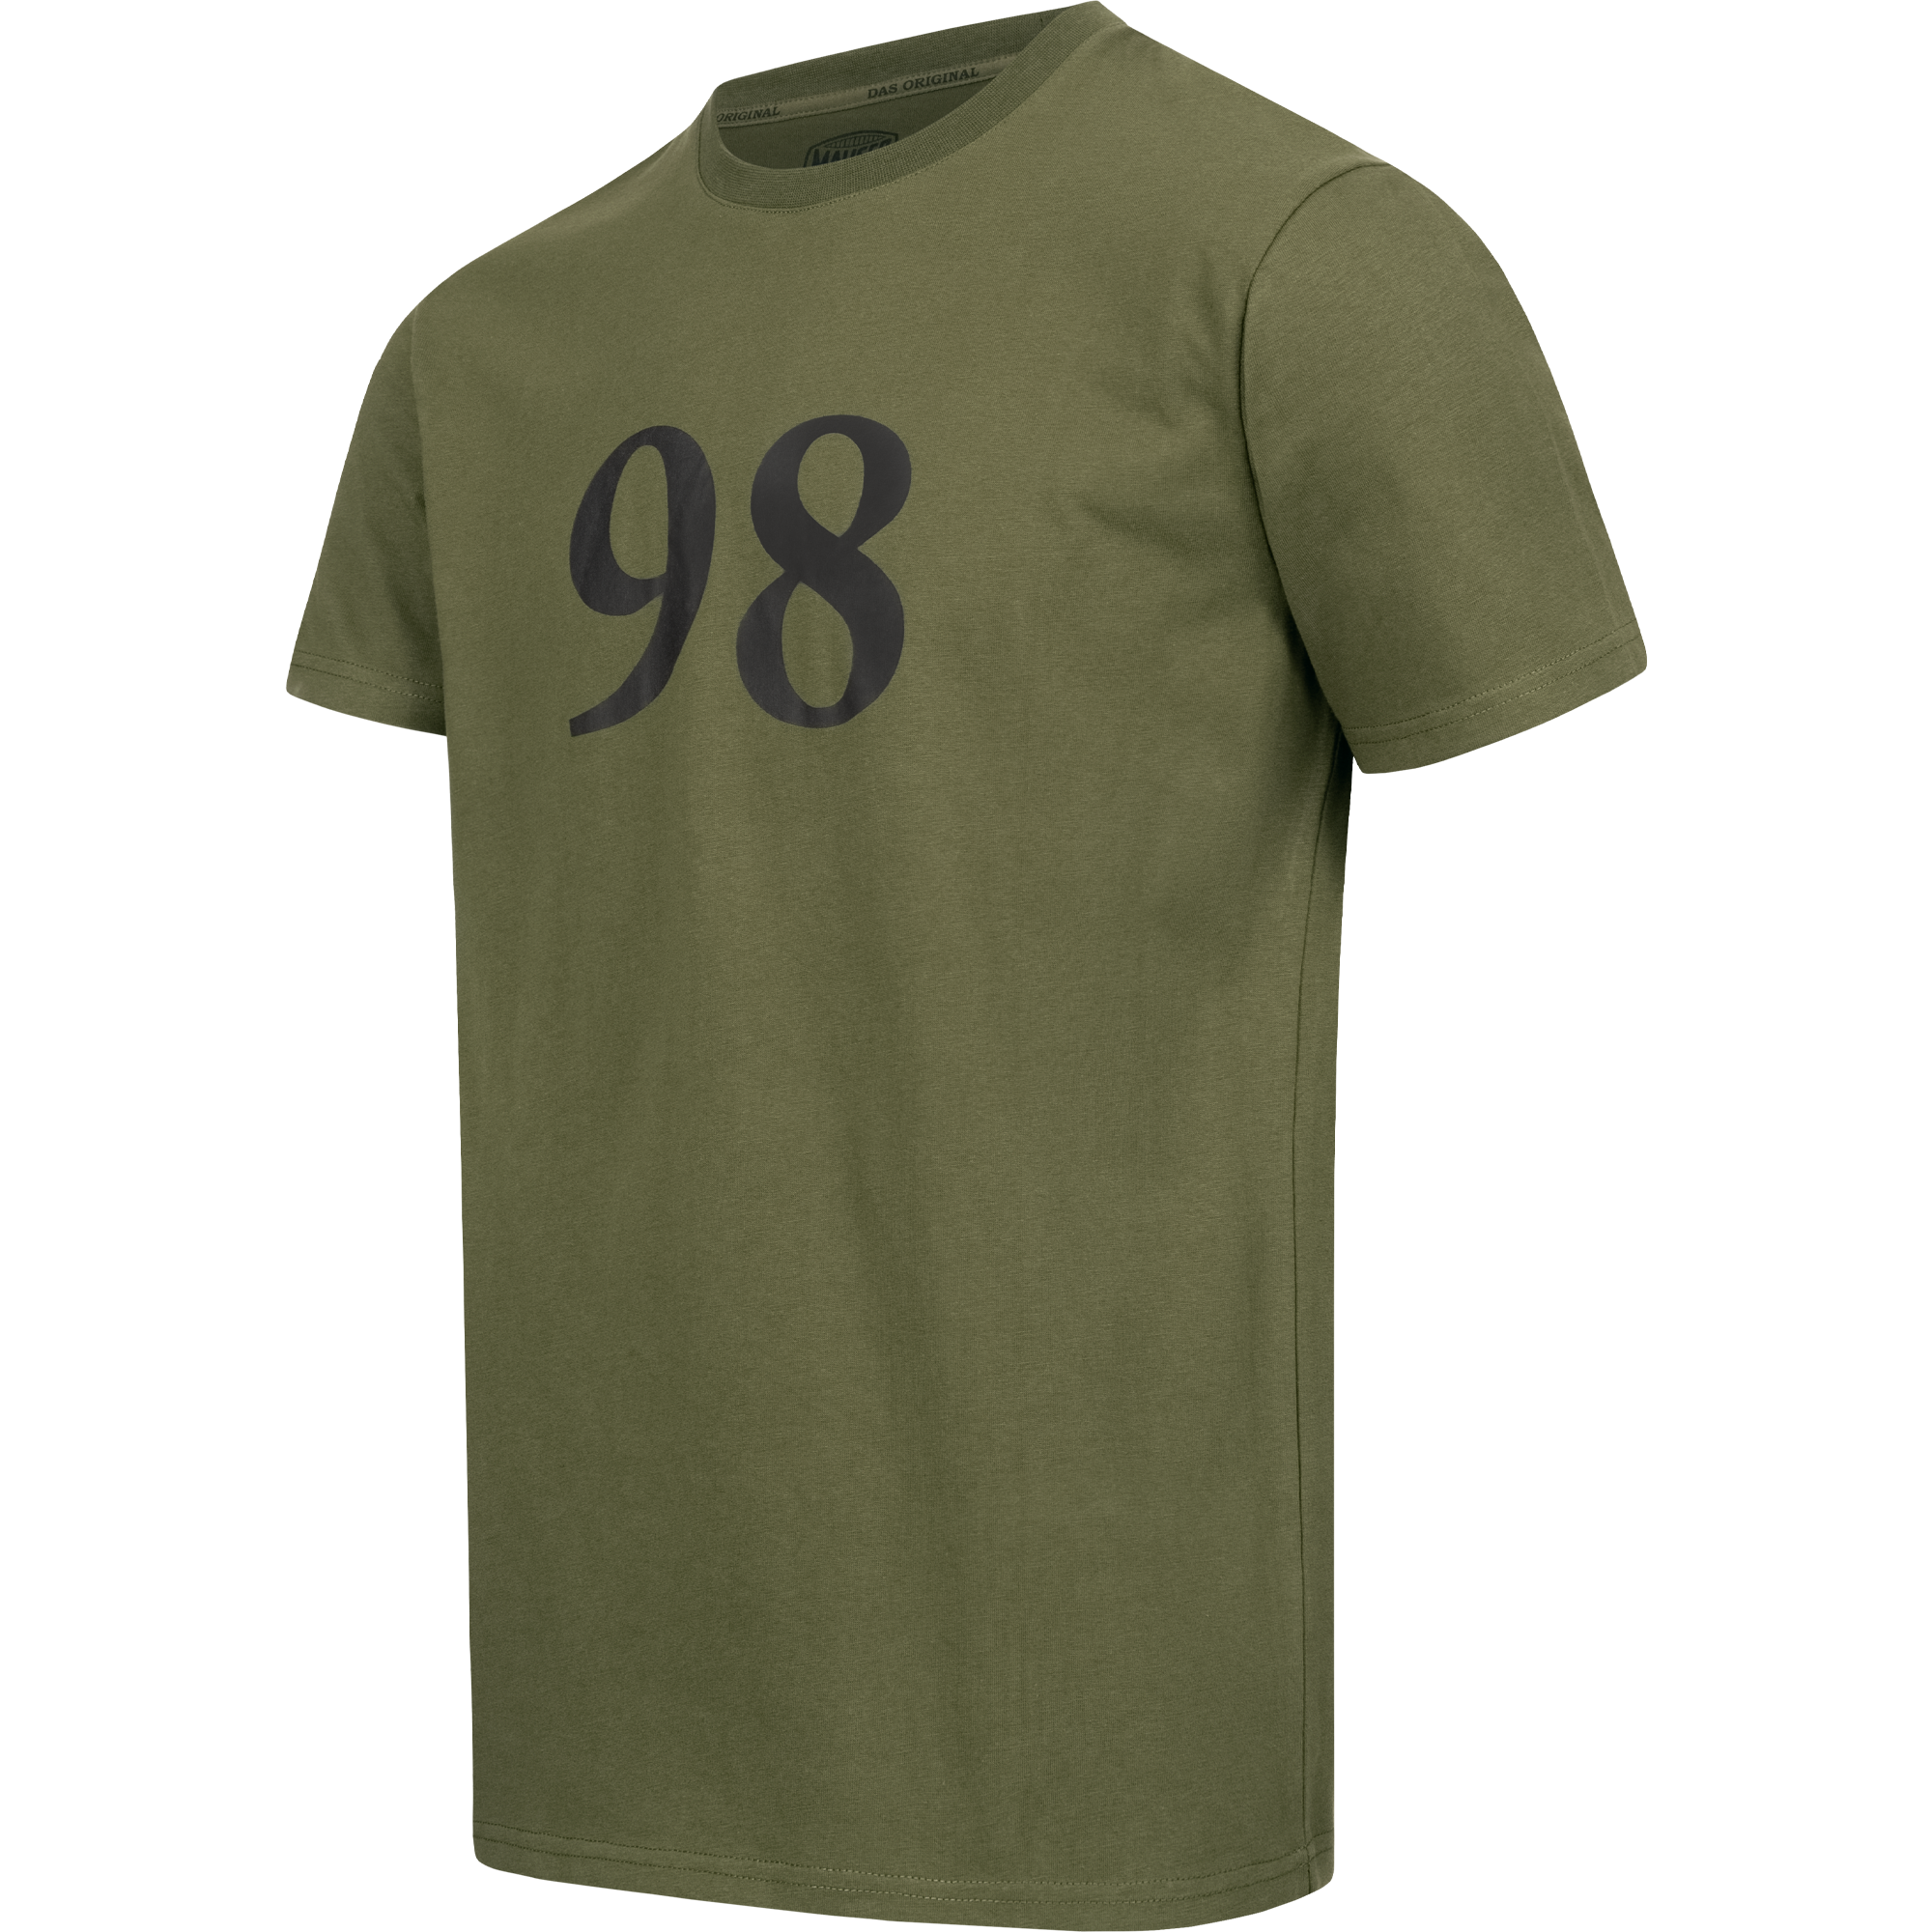 MAUSER 98 Jubiläums-Shirt